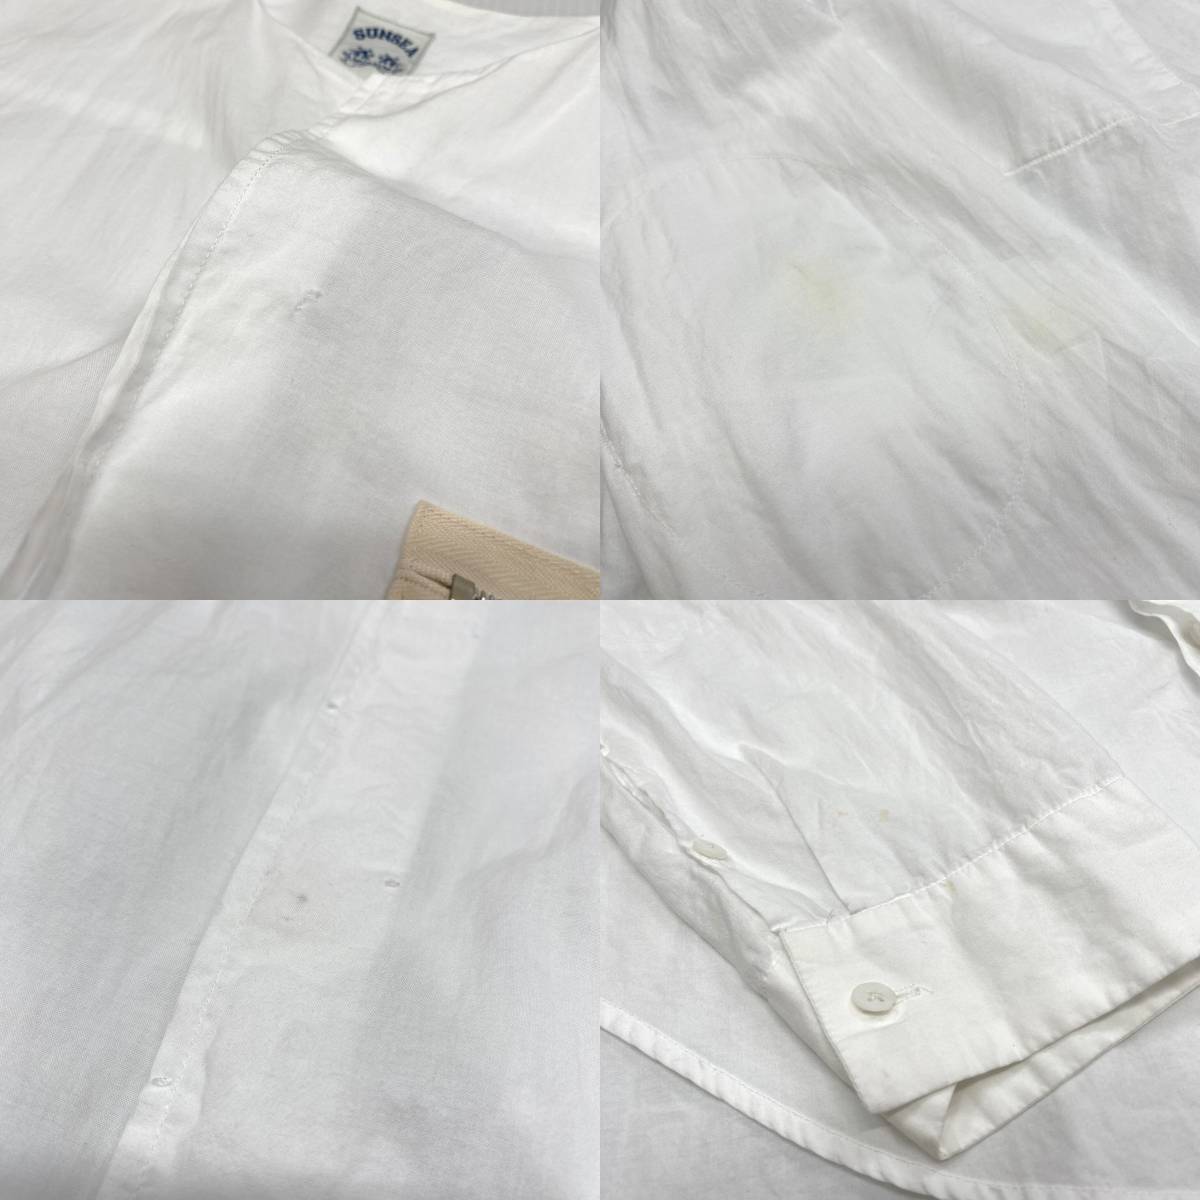 SUNSEA サンシー Exploration Shirt ノーカラーシャツ 3 ホワイト 白 長袖シャツ_画像7